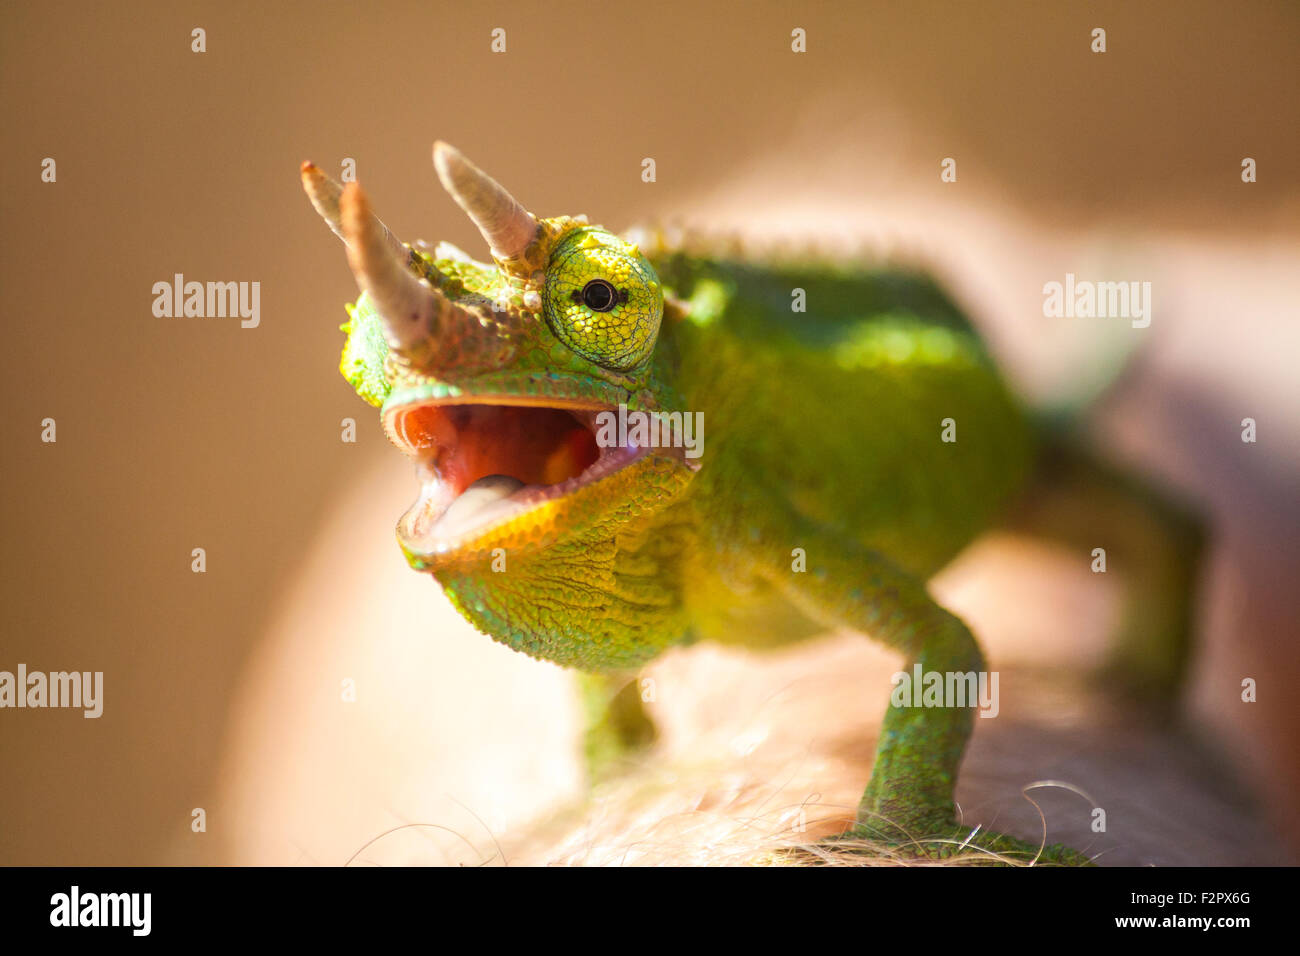 Dettaglio di un Jackson's Chameleon Foto Stock